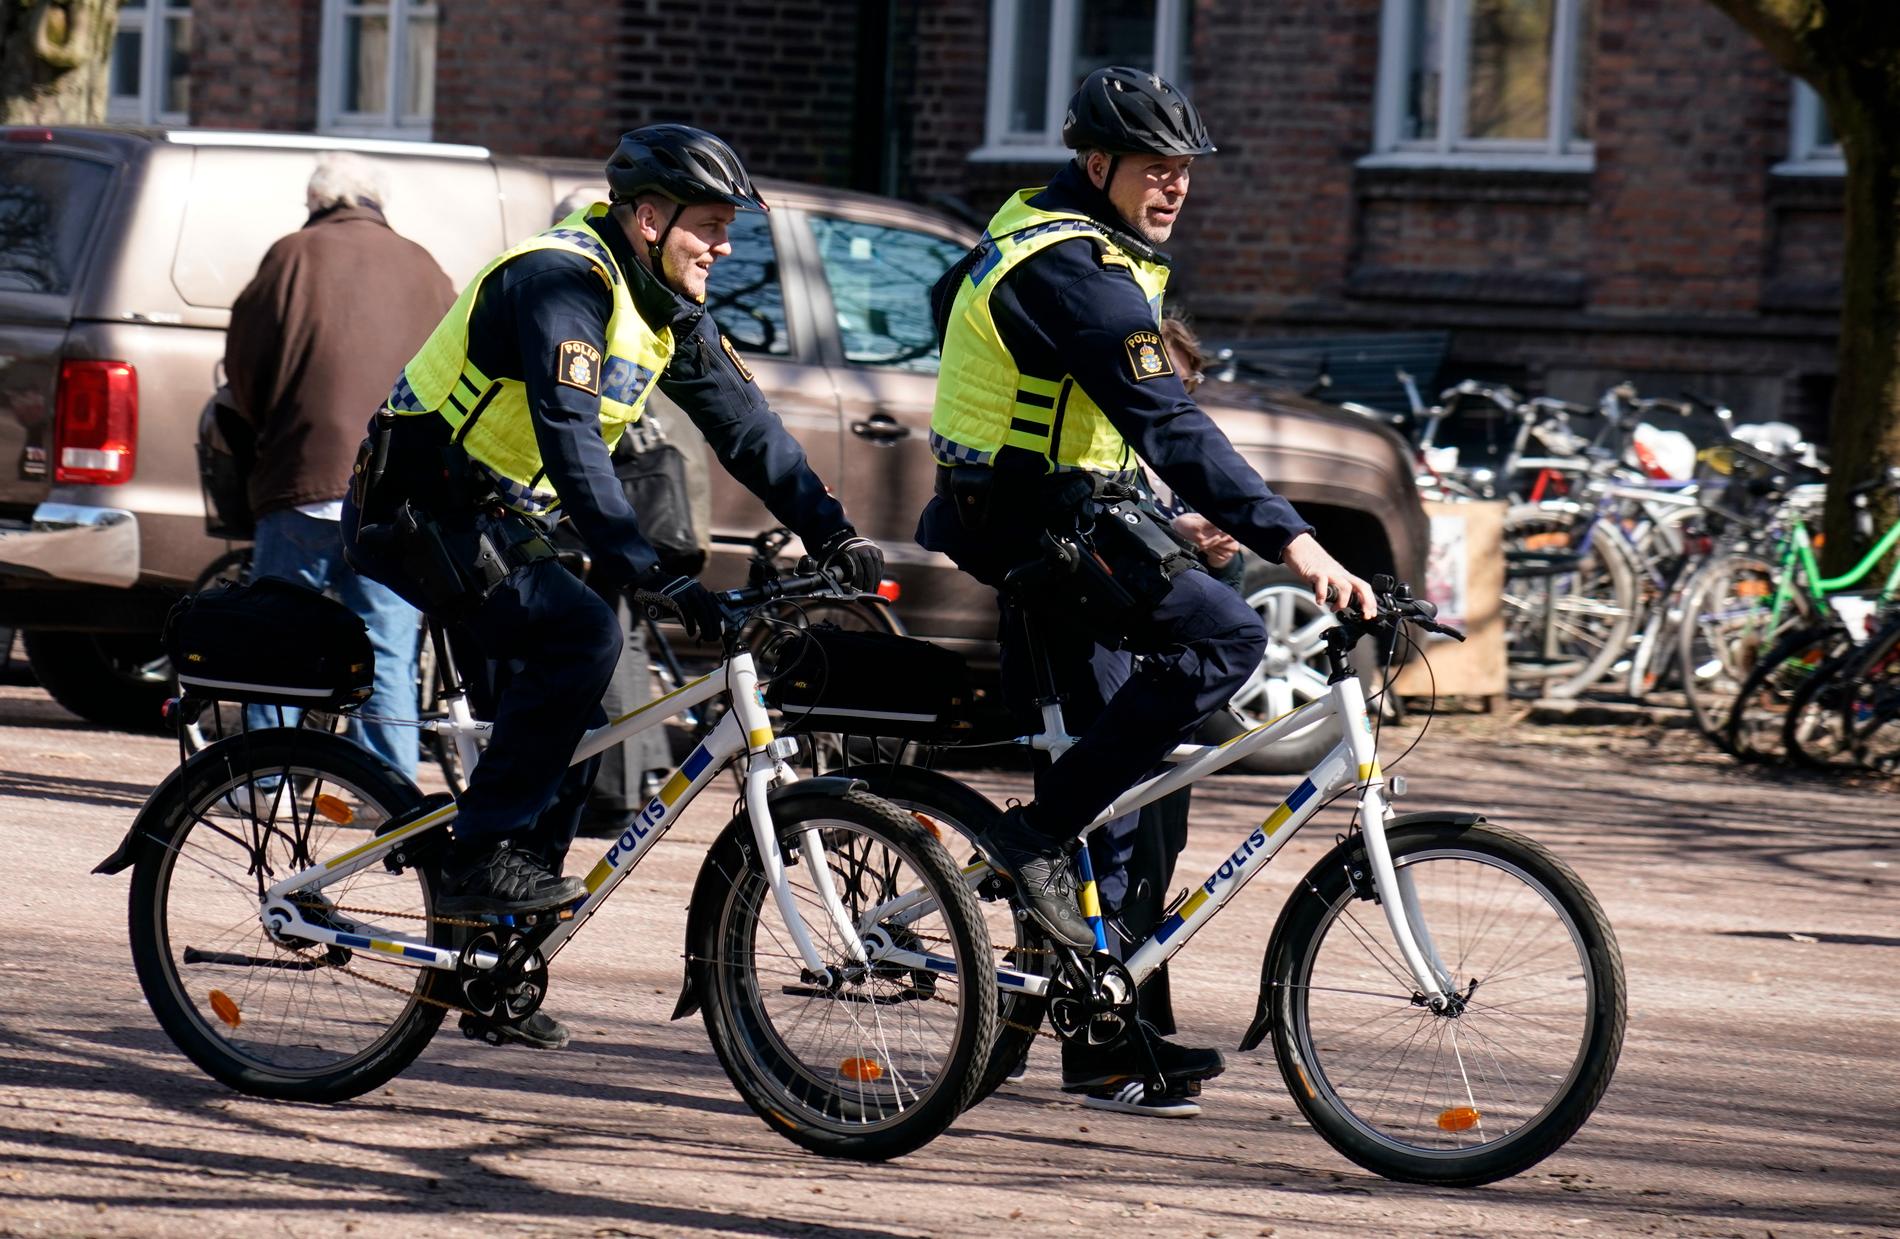 Vår i Lund. Poliser på cykel i Lundagård när årets vår till slut anlände med tvåsiffriga temperaturer.